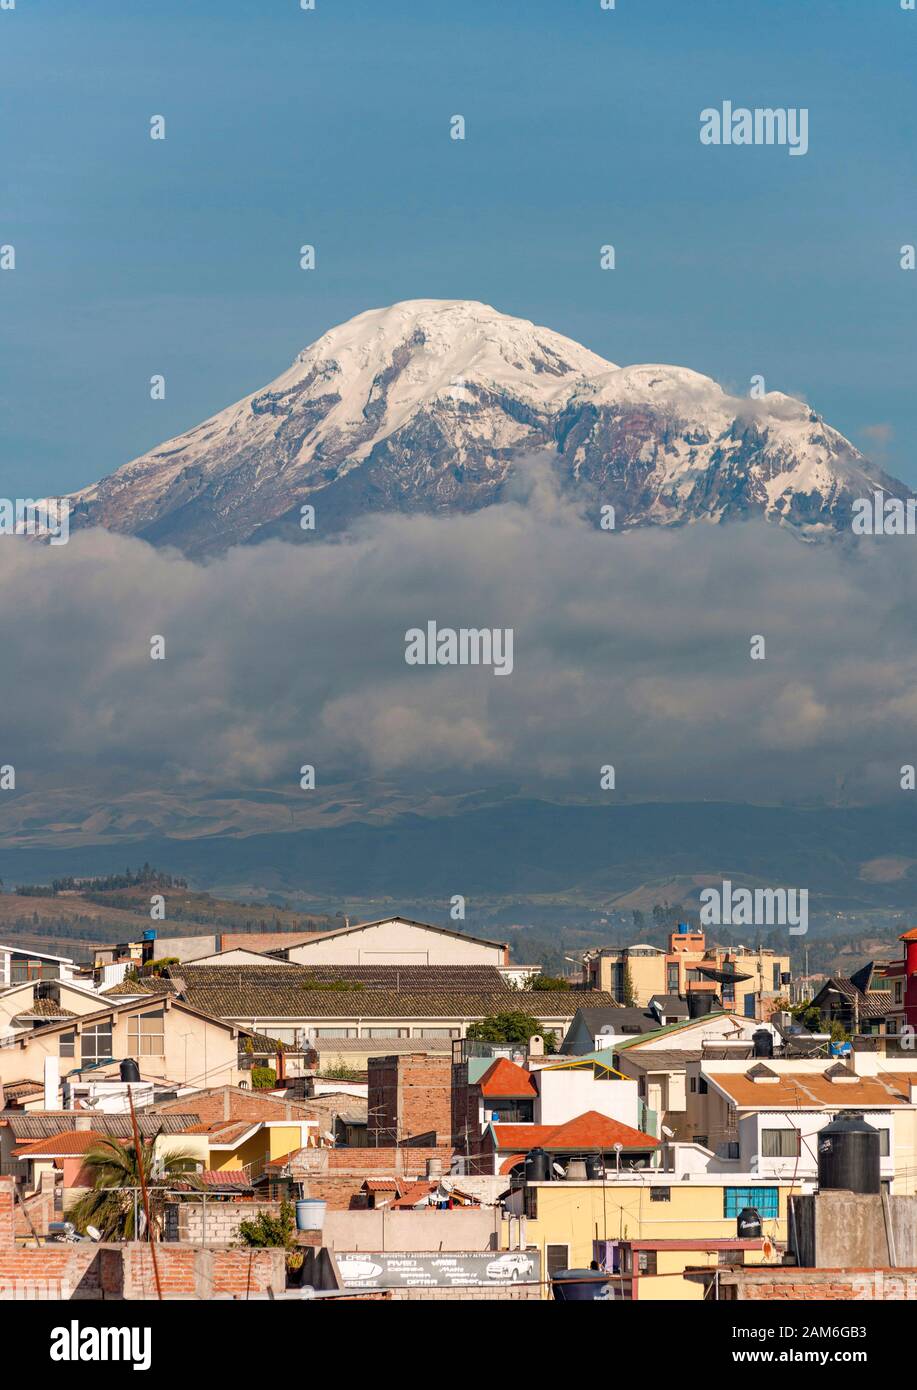 Monte Chimborazo volcán (6268m) visto a través de los tejados de la ciudad de Riobamba. Foto de stock